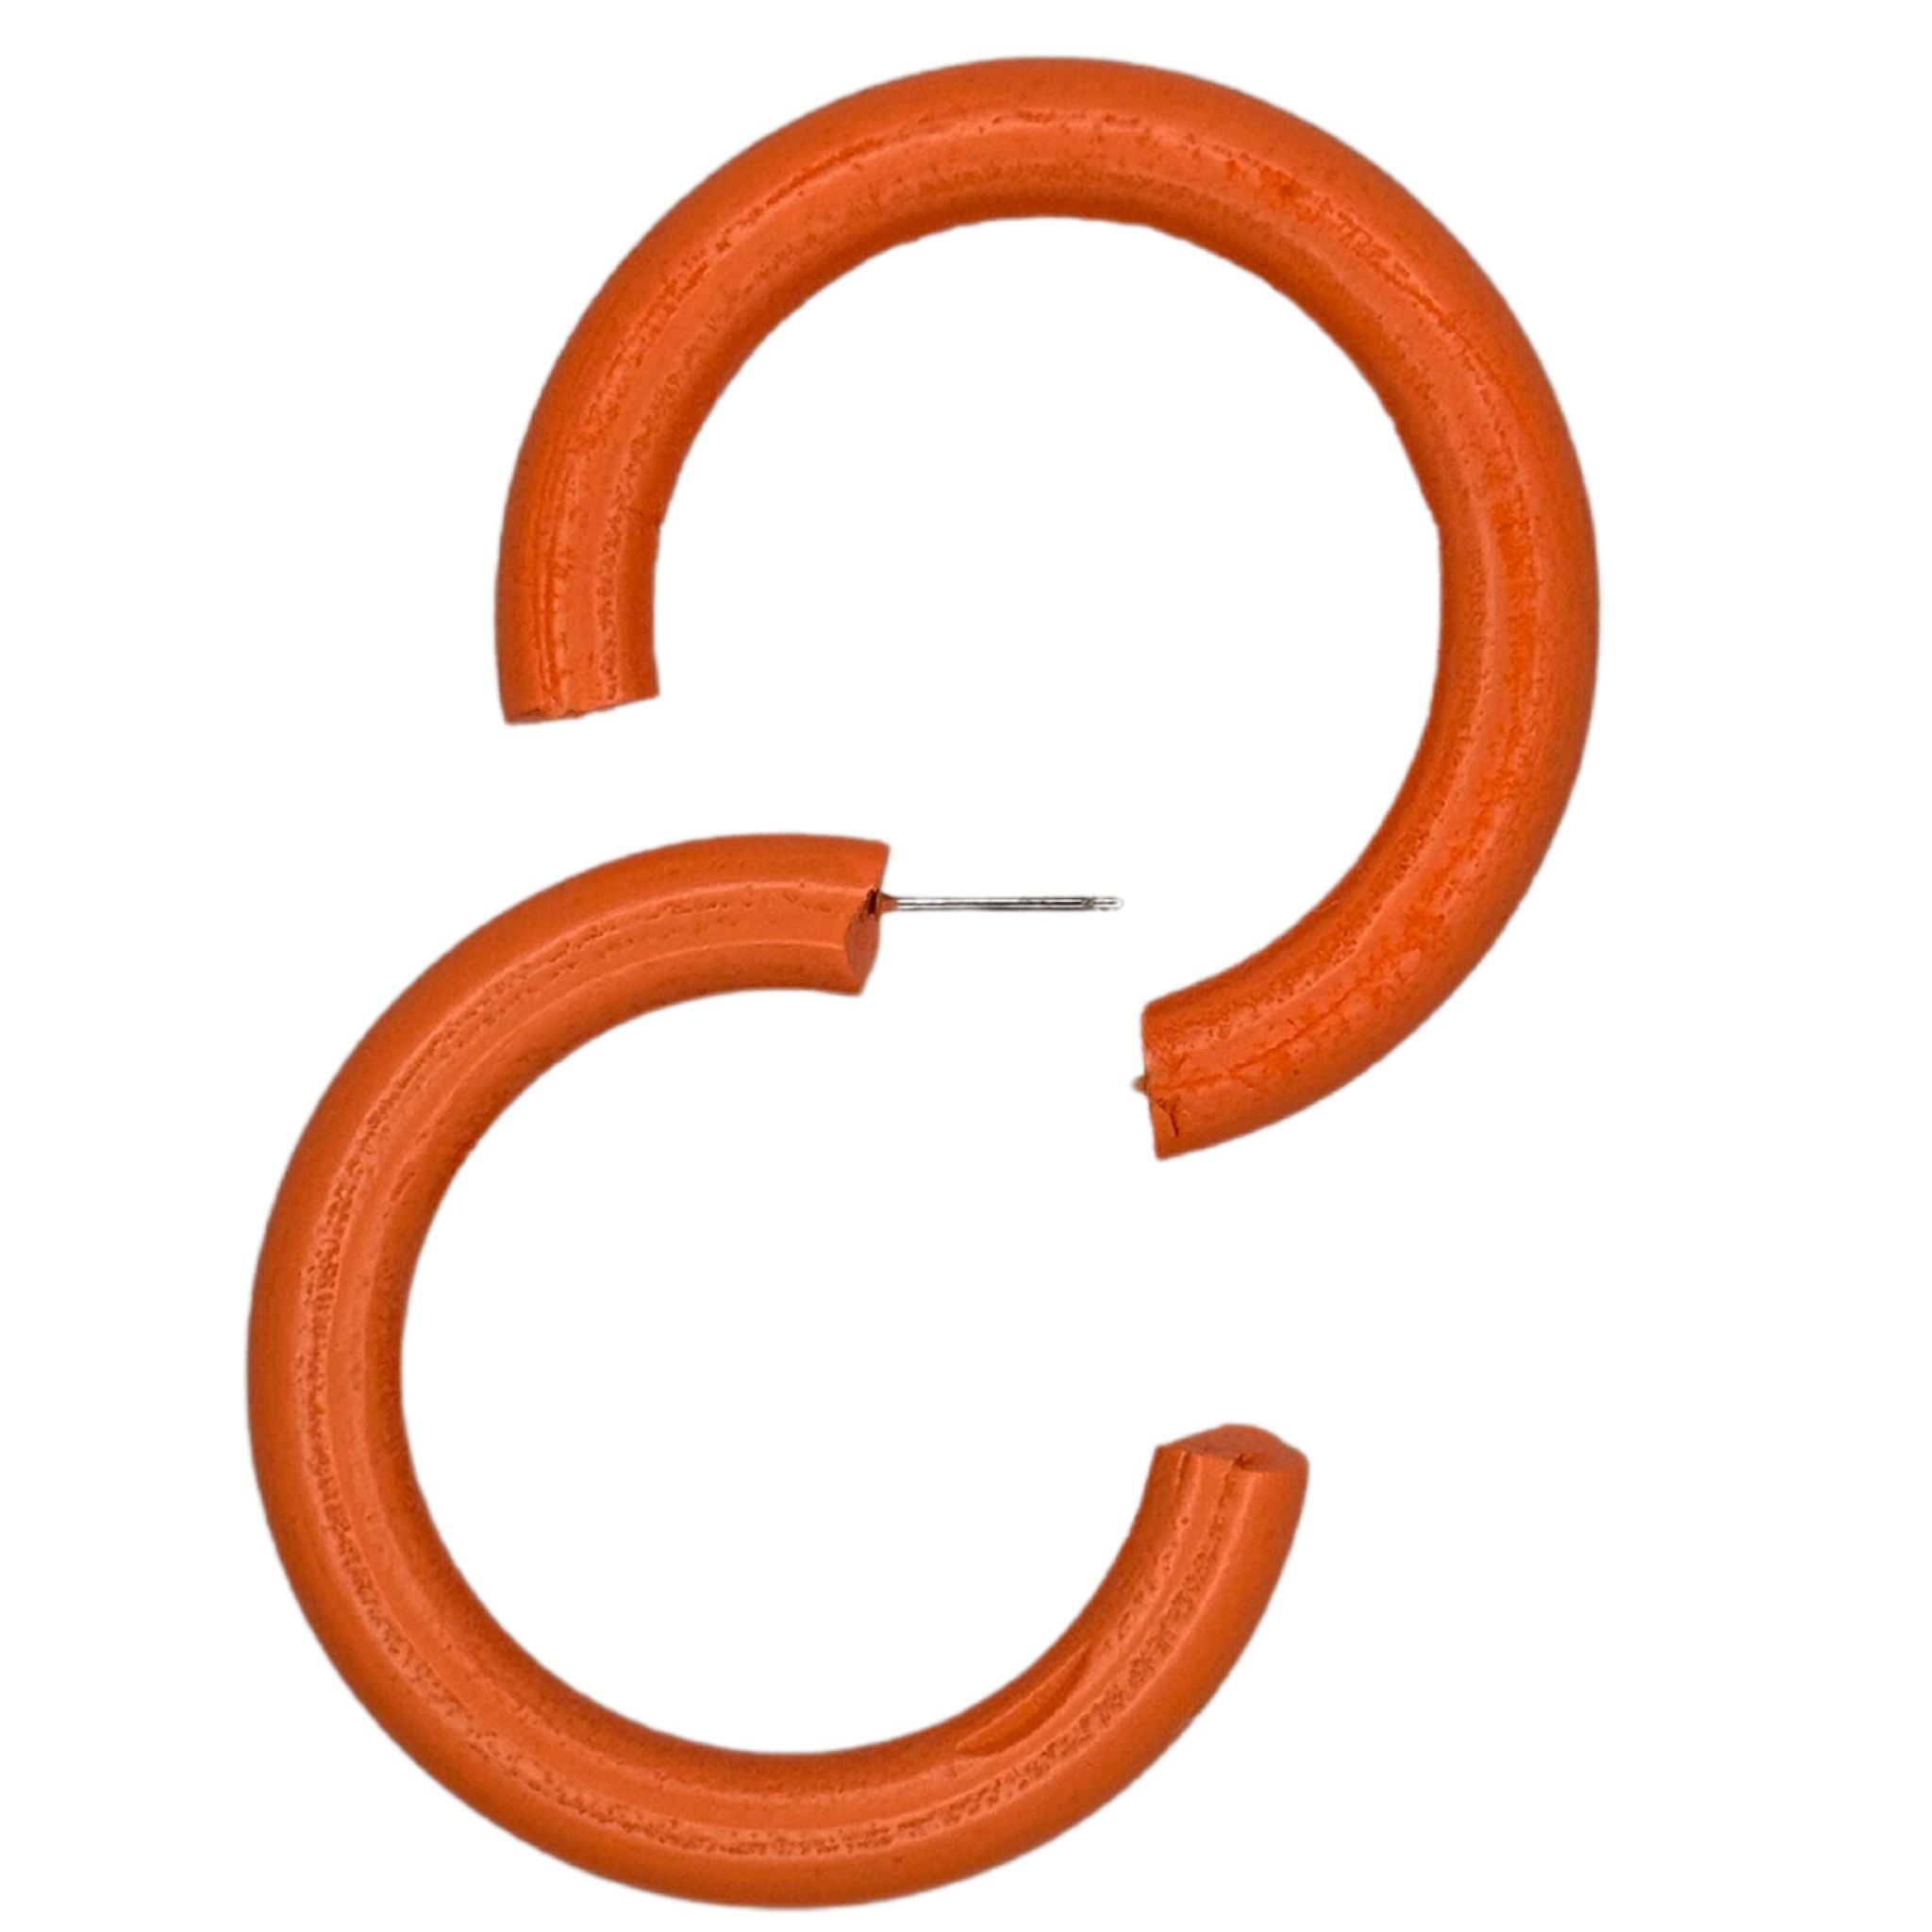 Wooden Hoop Earrings - Neon Orange